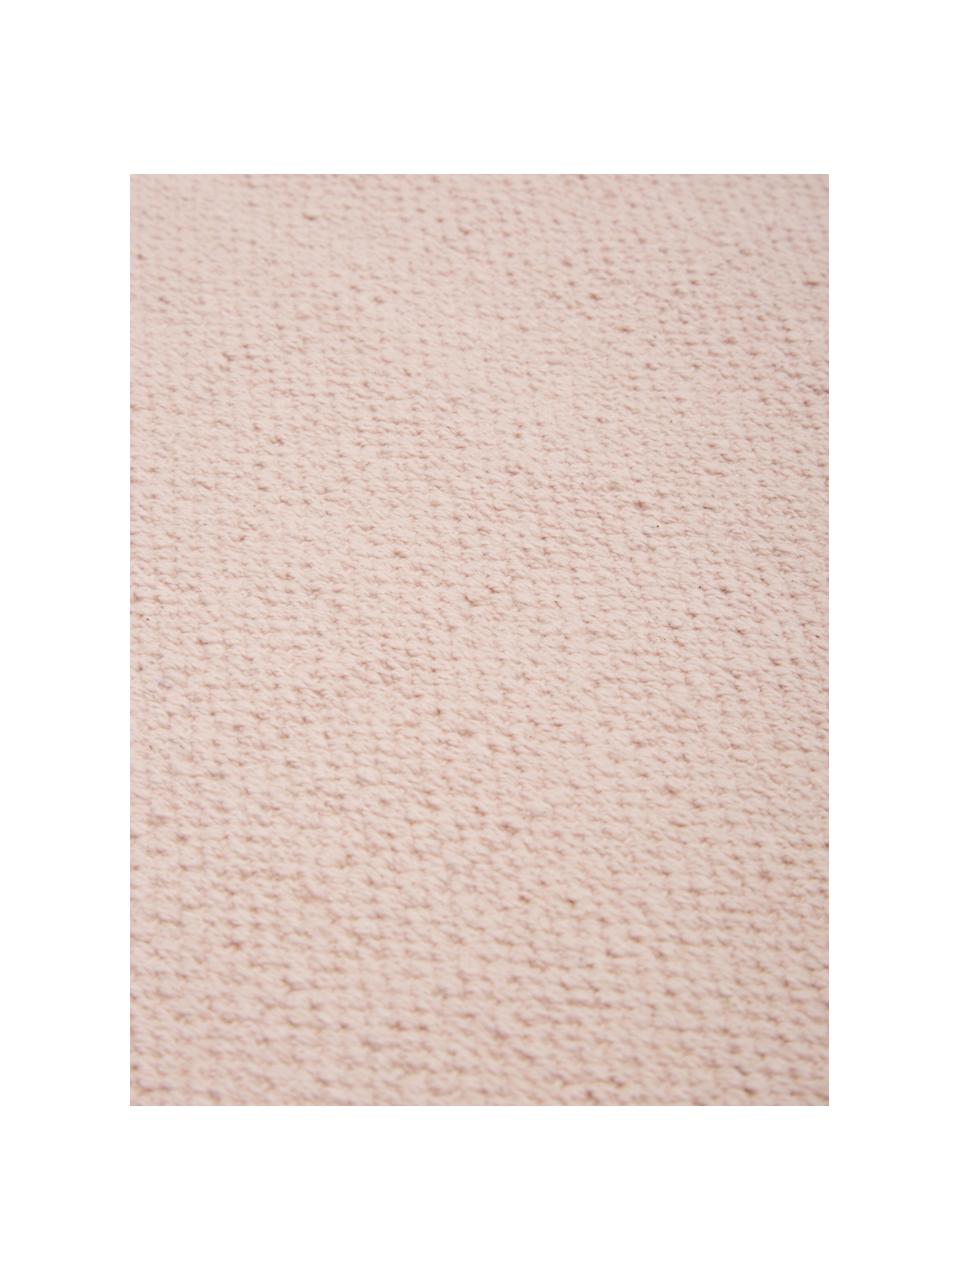 Dünner Baumwollteppich Agneta in Rosa, handgewebt, 100% Baumwolle, Rosa, B 160 x L 230 cm (Größe M)